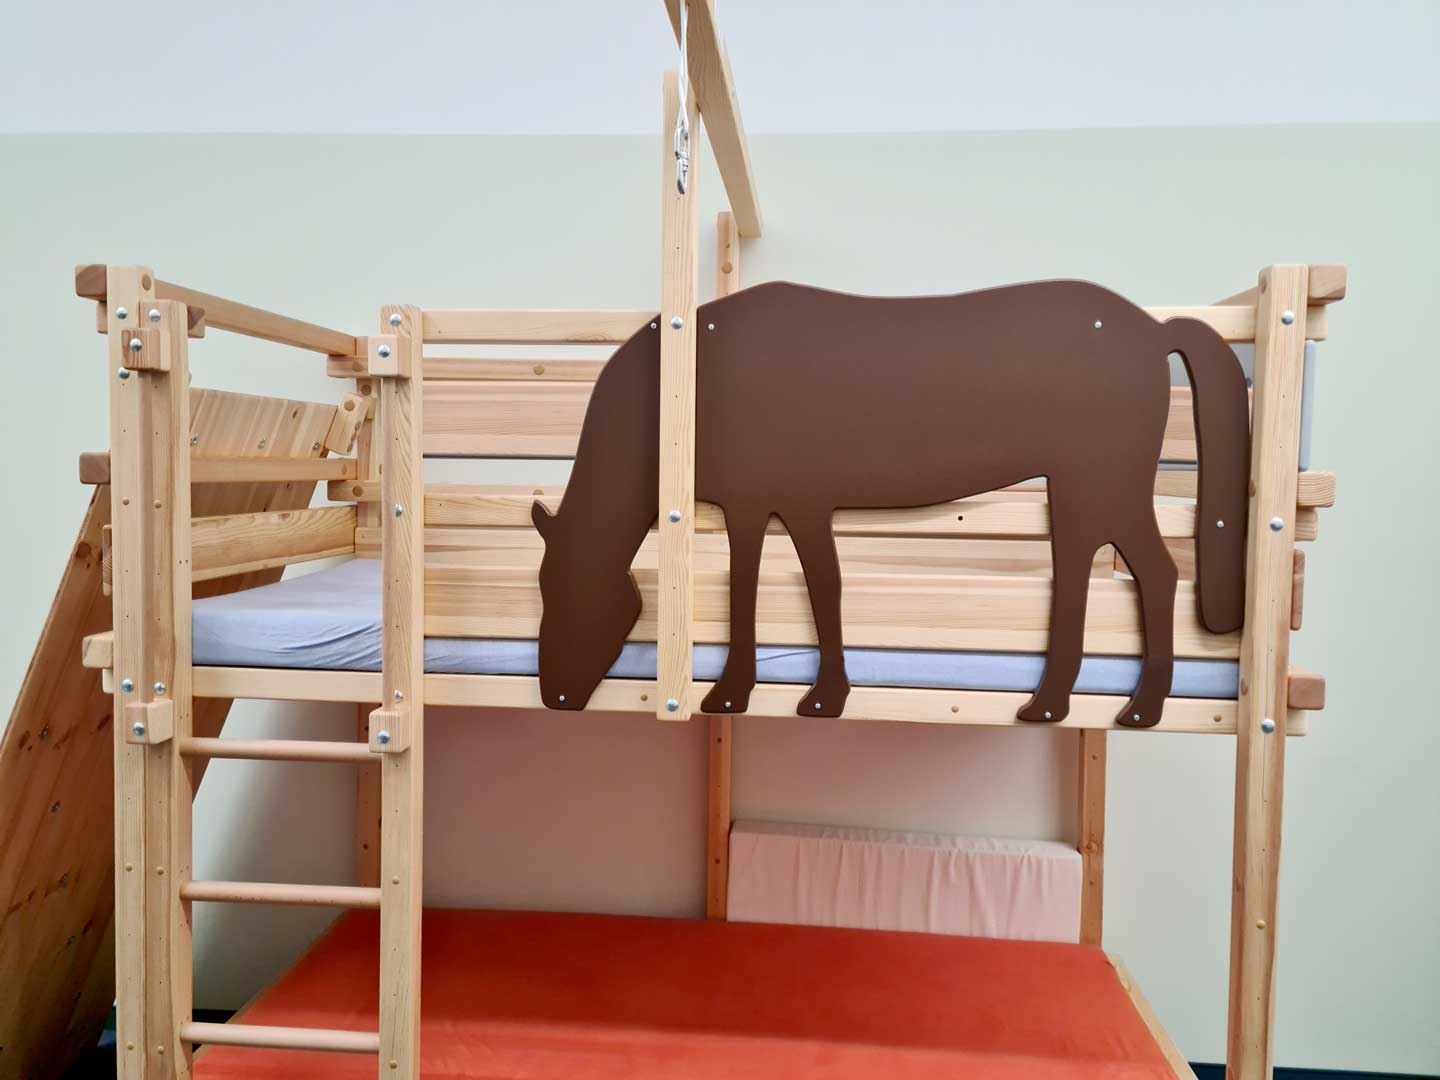 At yatağı